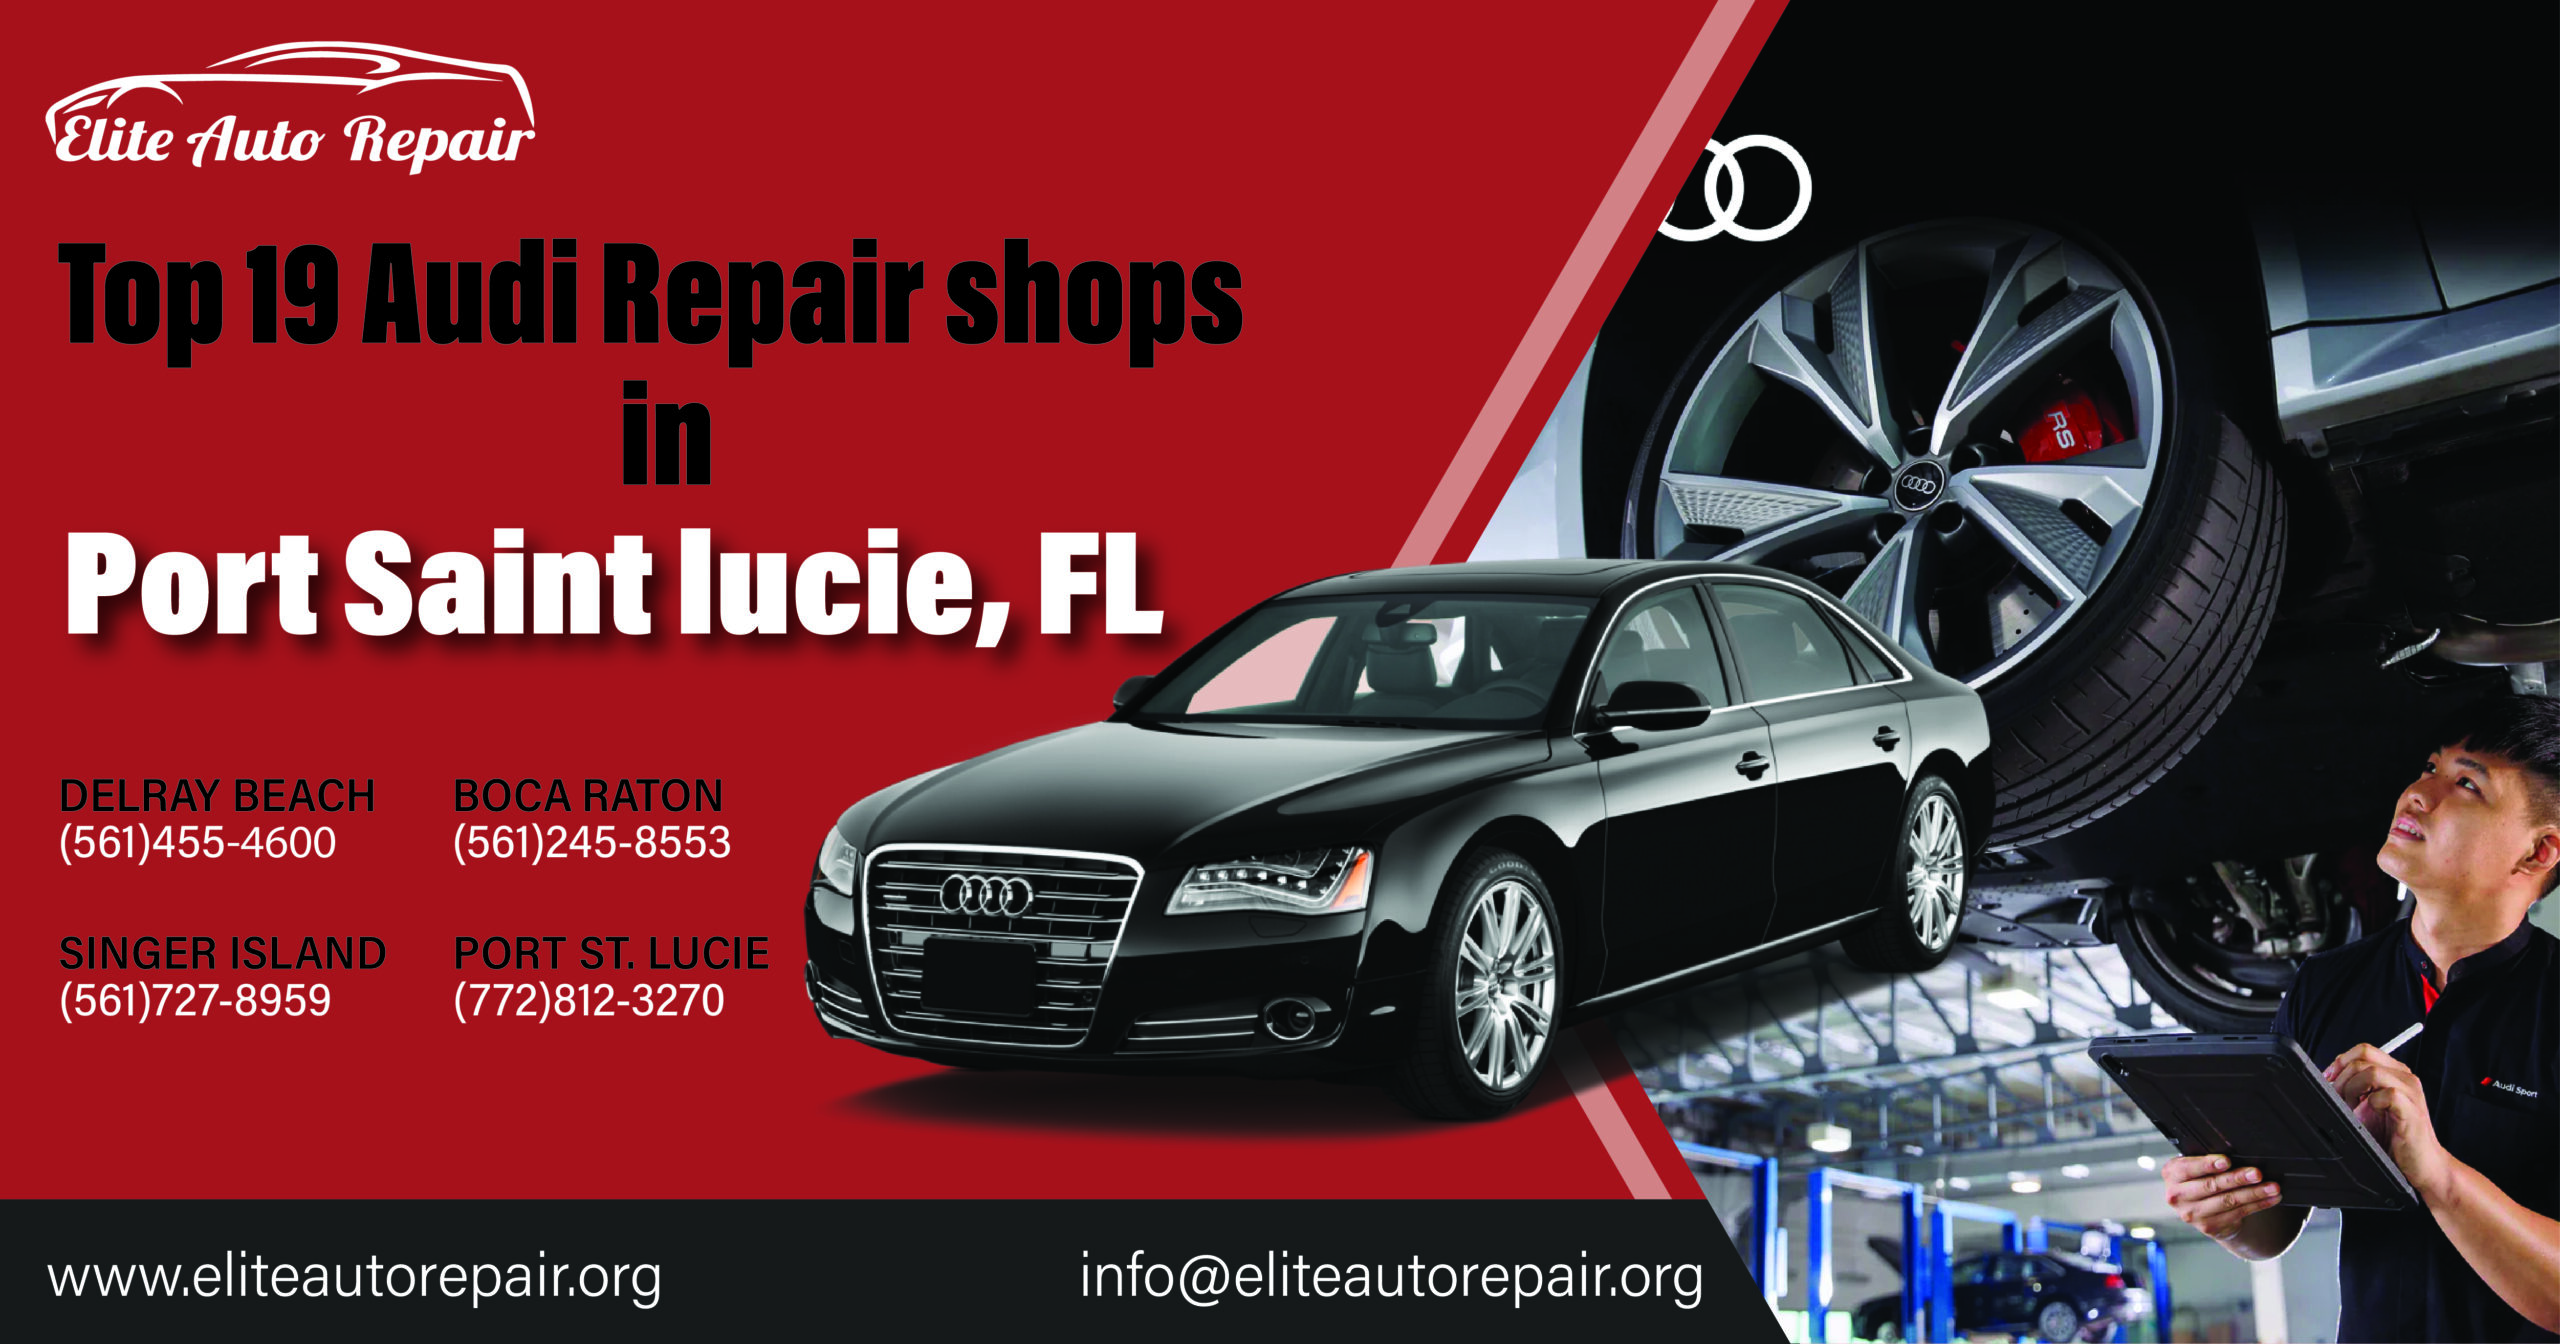 Top 19 Audi Repair Shops in Port Saint Lucie, FL